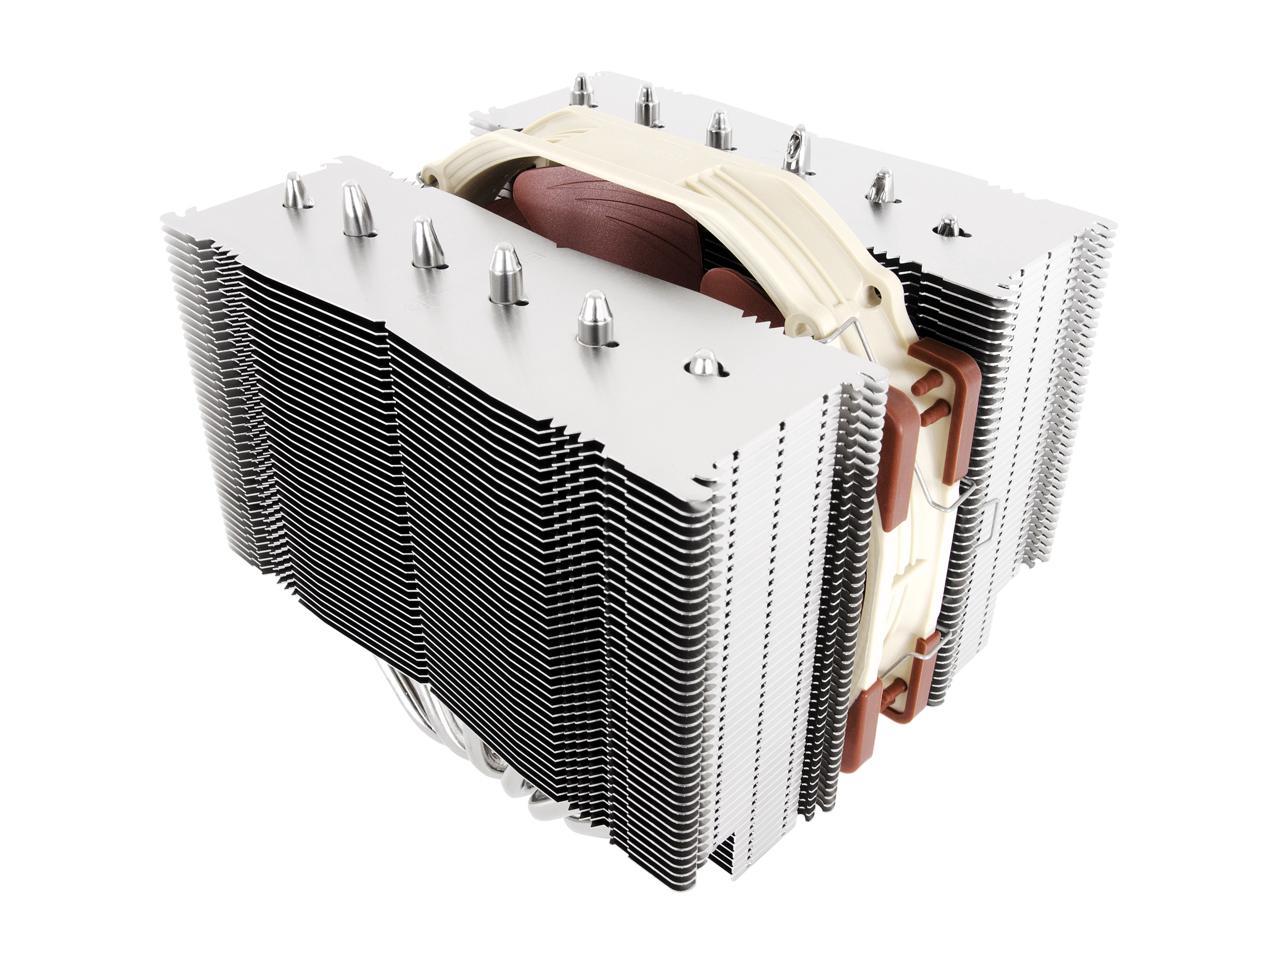 Noctua NH-D15S 140mm SSO2 D-Type Premium CPU Cooler, NF-A15 PWM Fans